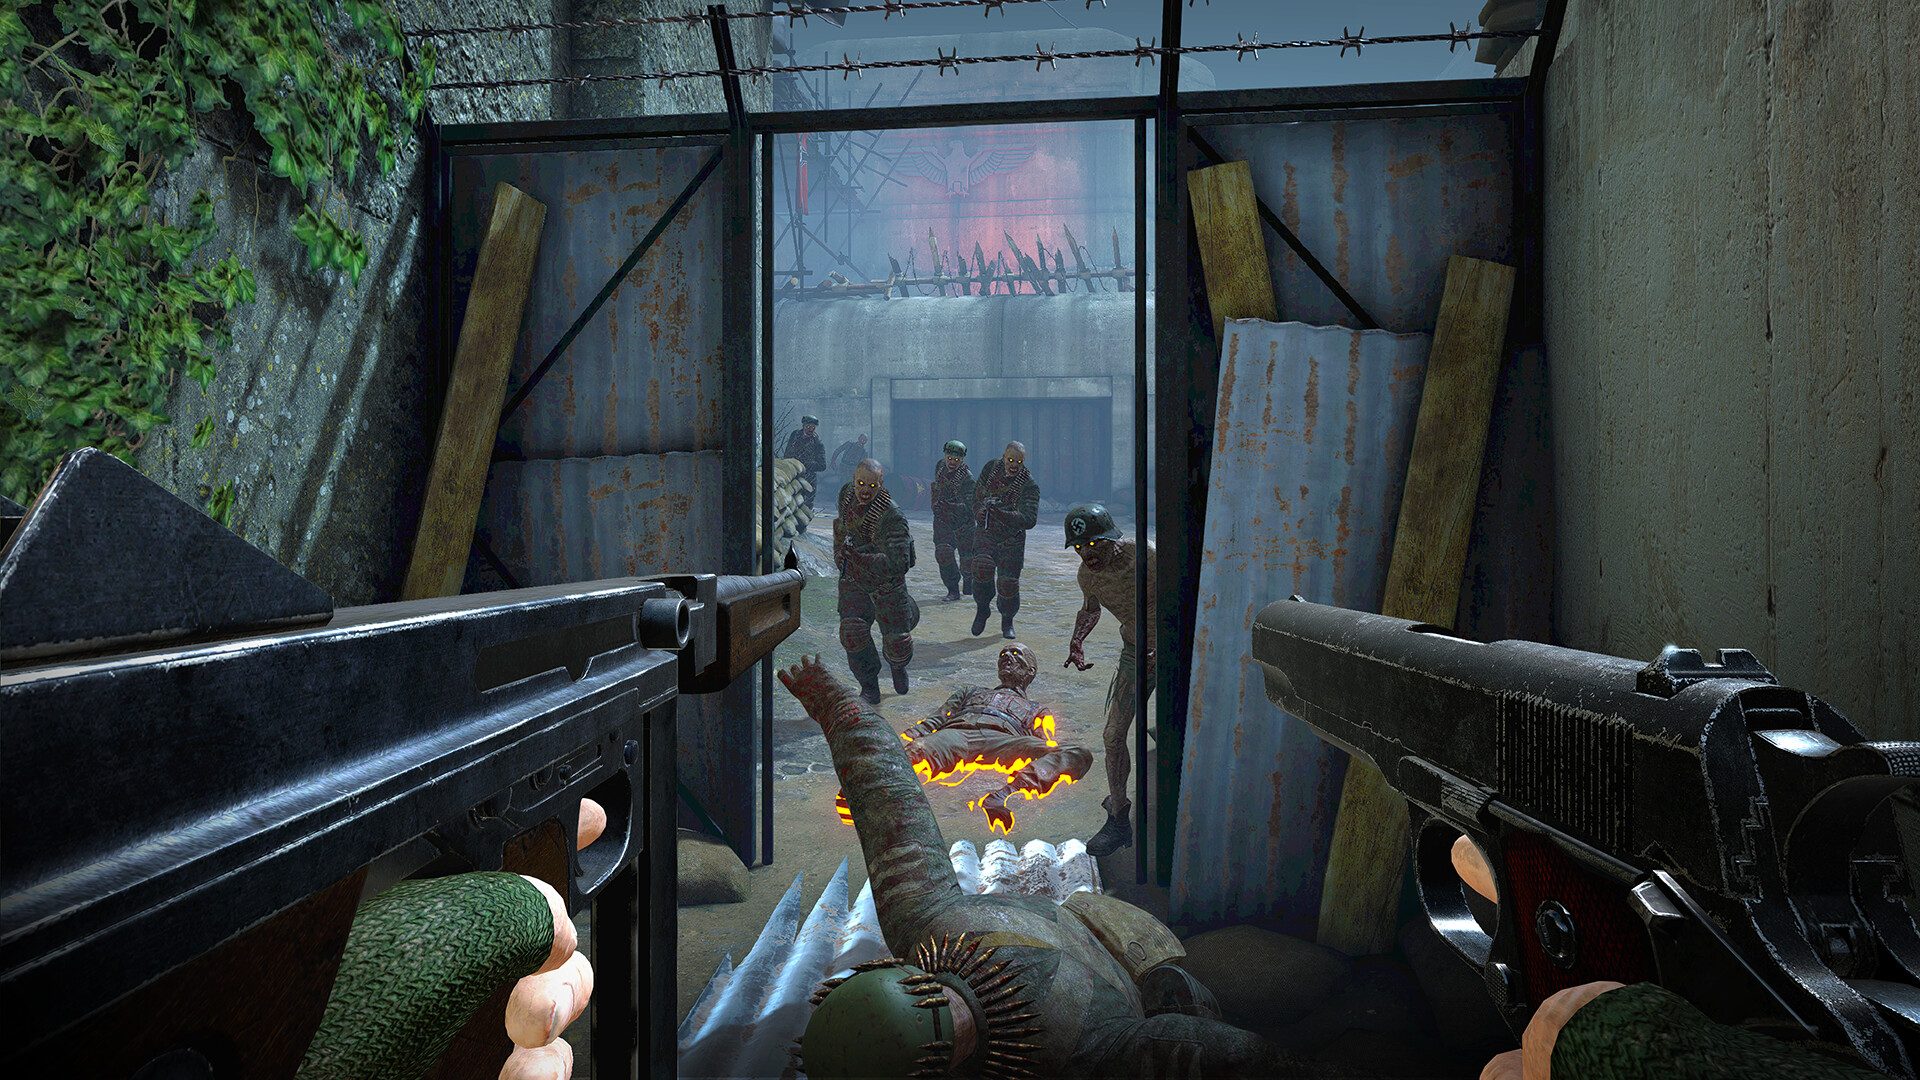 يعرض المقطع الدعائي الجديد لفيلم "Zombie Army VR" حملة قصة متفجرة، قادمة إلى سماعات الرأس الرئيسية هذا العام